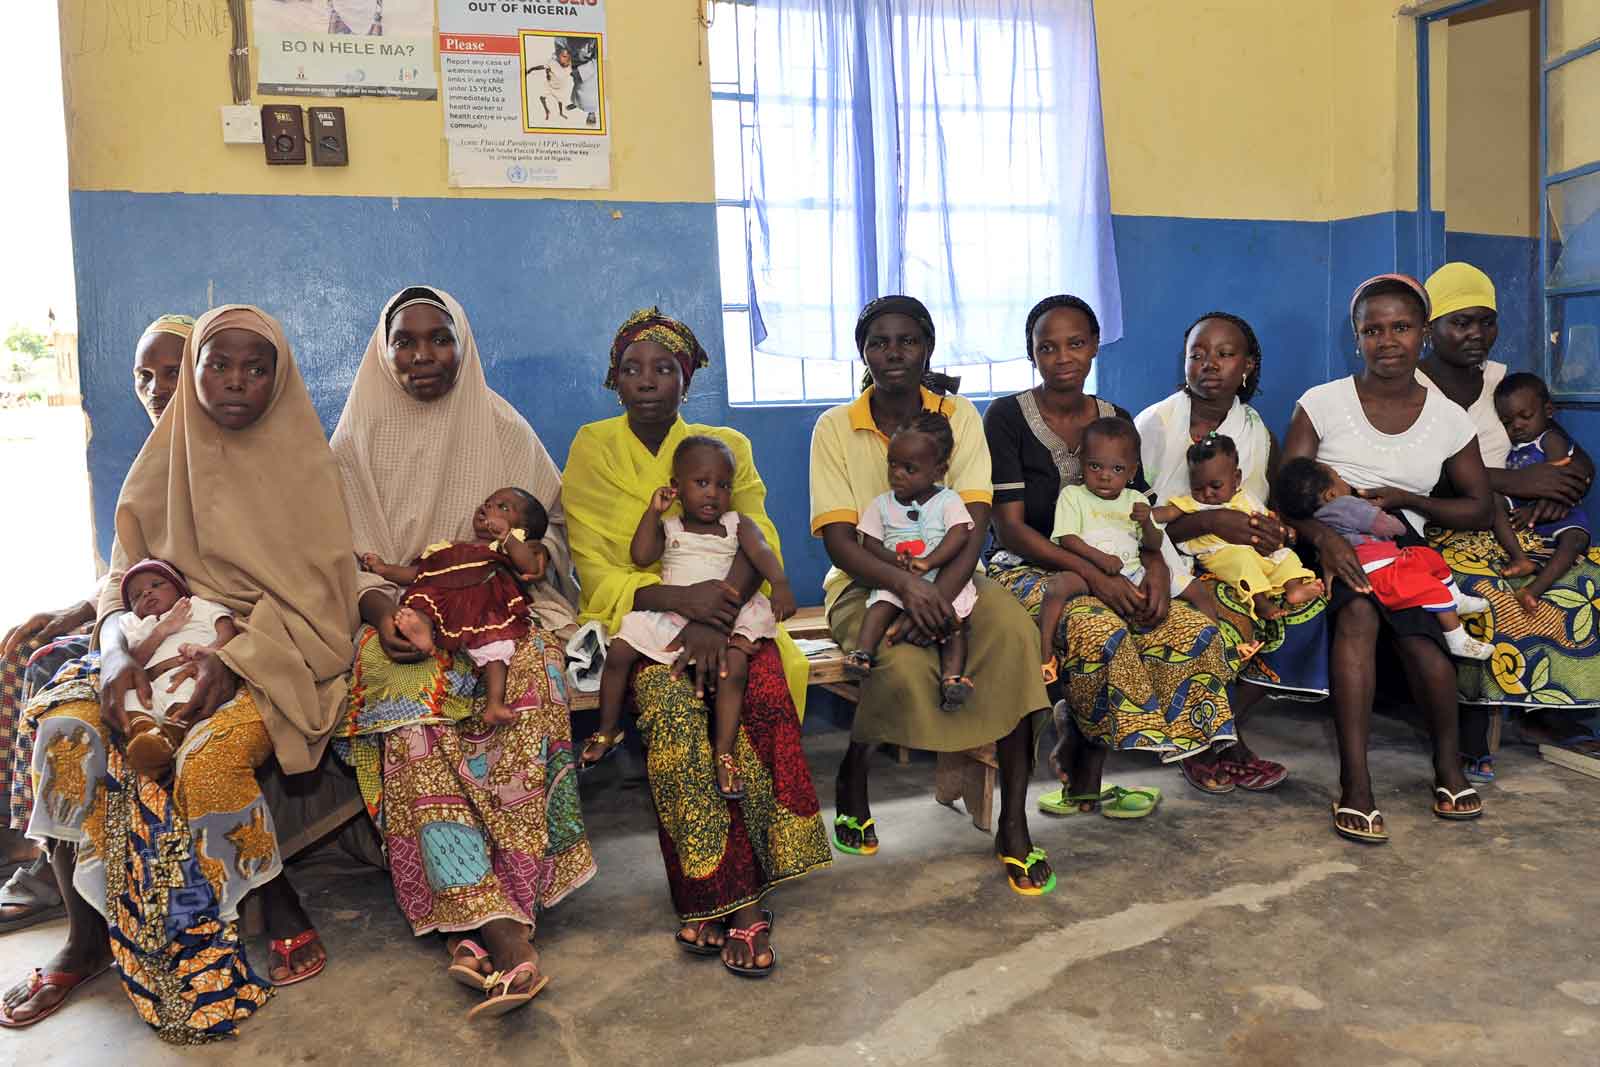 Chaque État du Nigéria planifie et assure les soins de santé de manière autonome, le pays étant doté d’un système de gouvernement fédéral. Il en résulte des différences marquées entre États dans la qualité des soins de santé et notamment en matière de vaccination. Des femmes attendent ici dans un centre de maternité situé dans l’État de Niger.